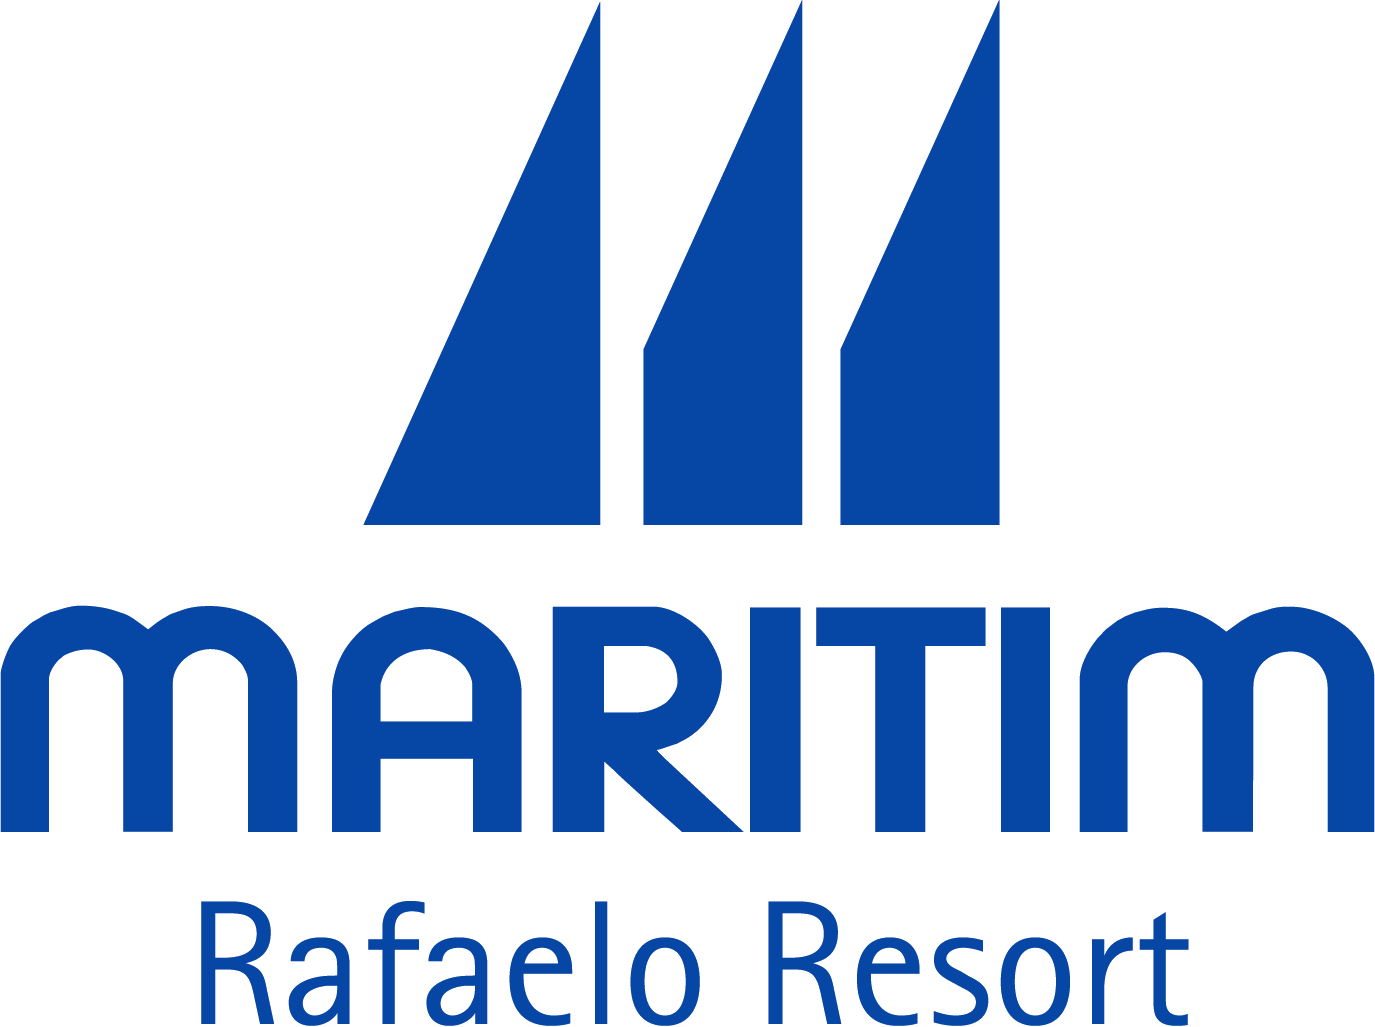 Rafaelo Resort Careers